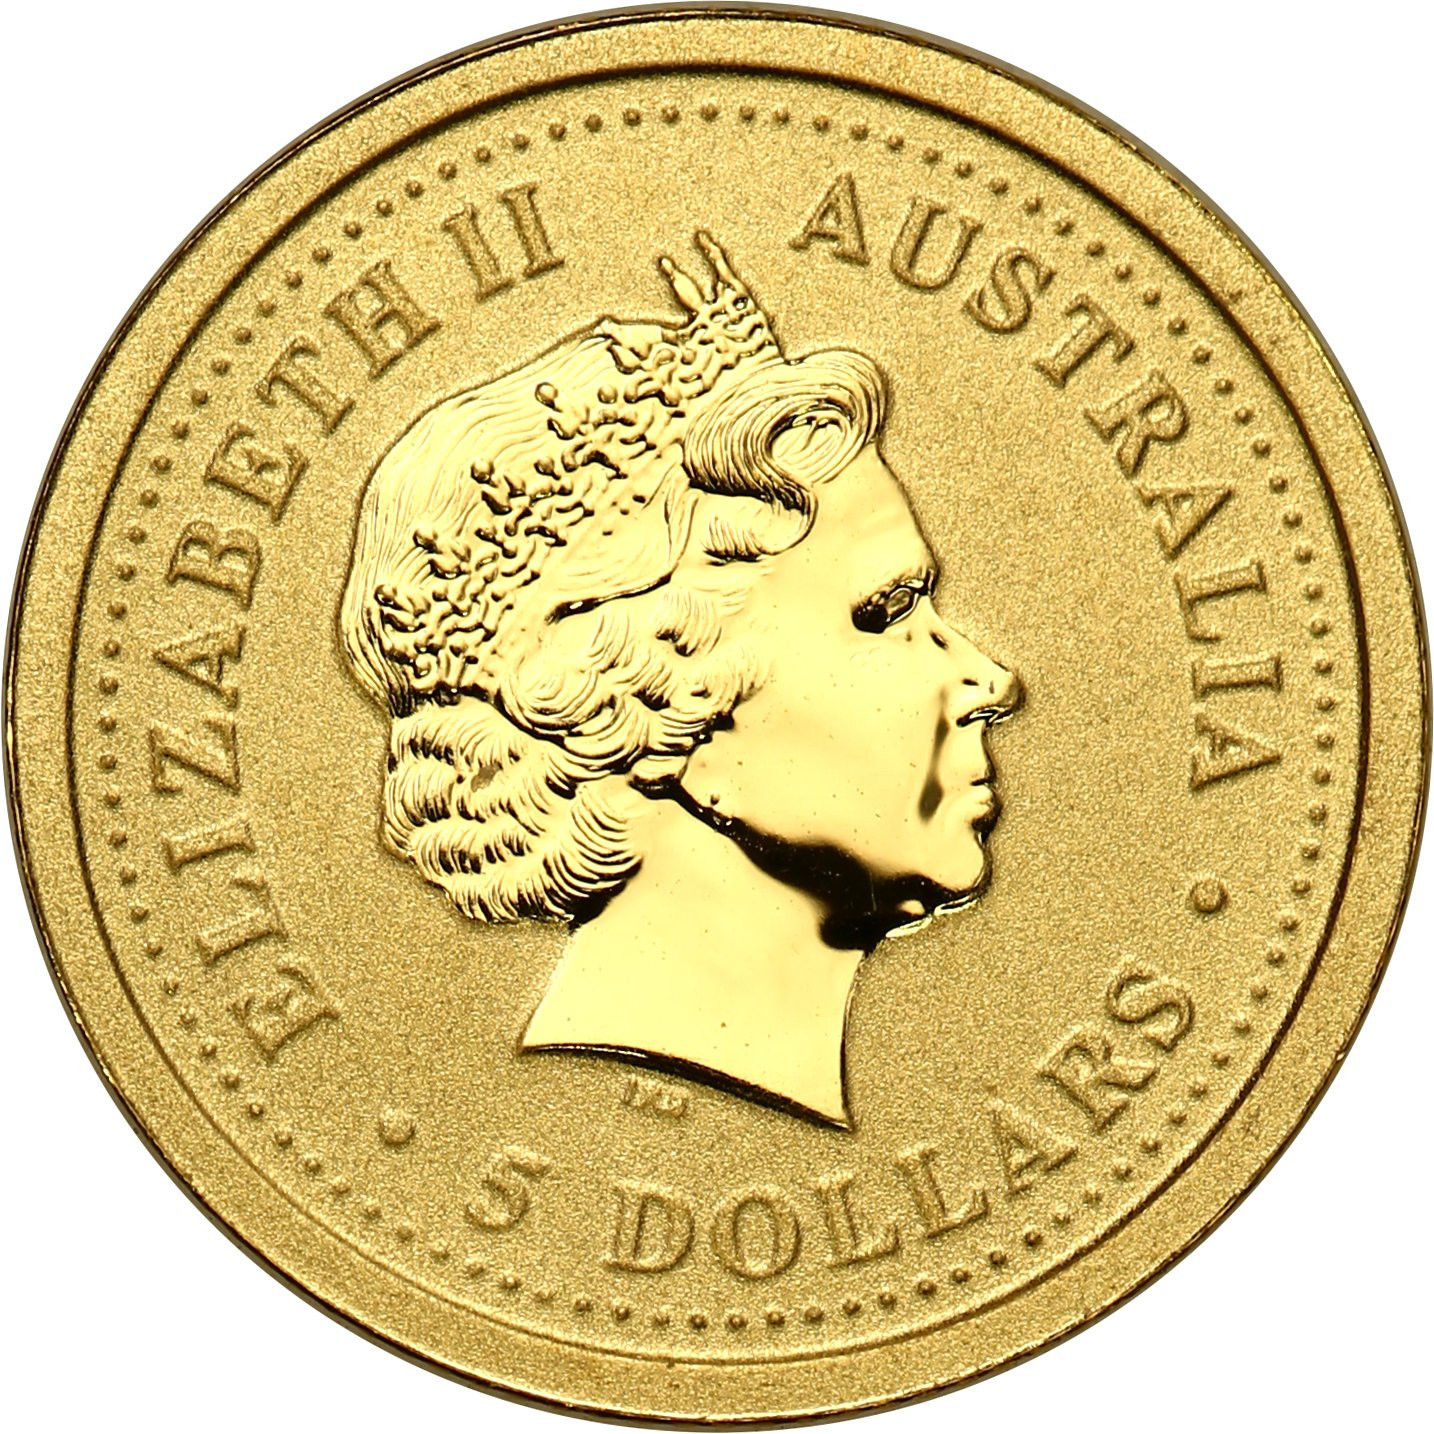 Australia. Złote 5 dolarów 2005 - ROK KOGUTA - 1/20 uncji złota